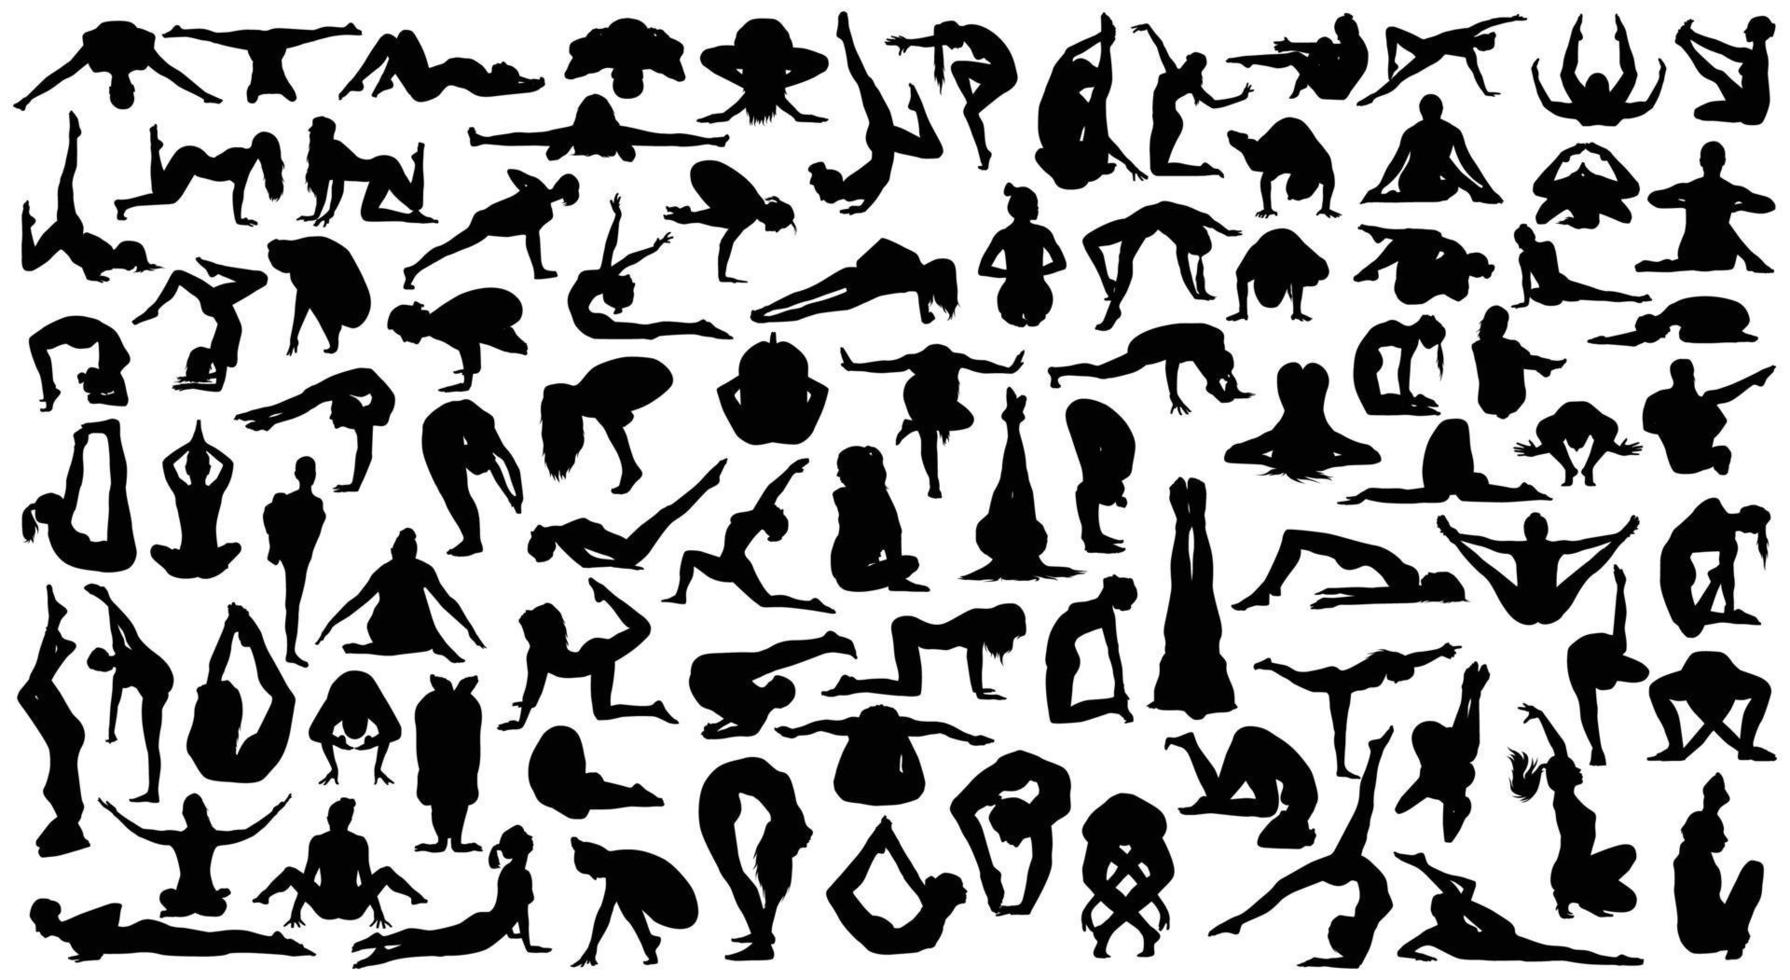 definir ilustração vetorial de silhueta de ioga preto e branco vetor